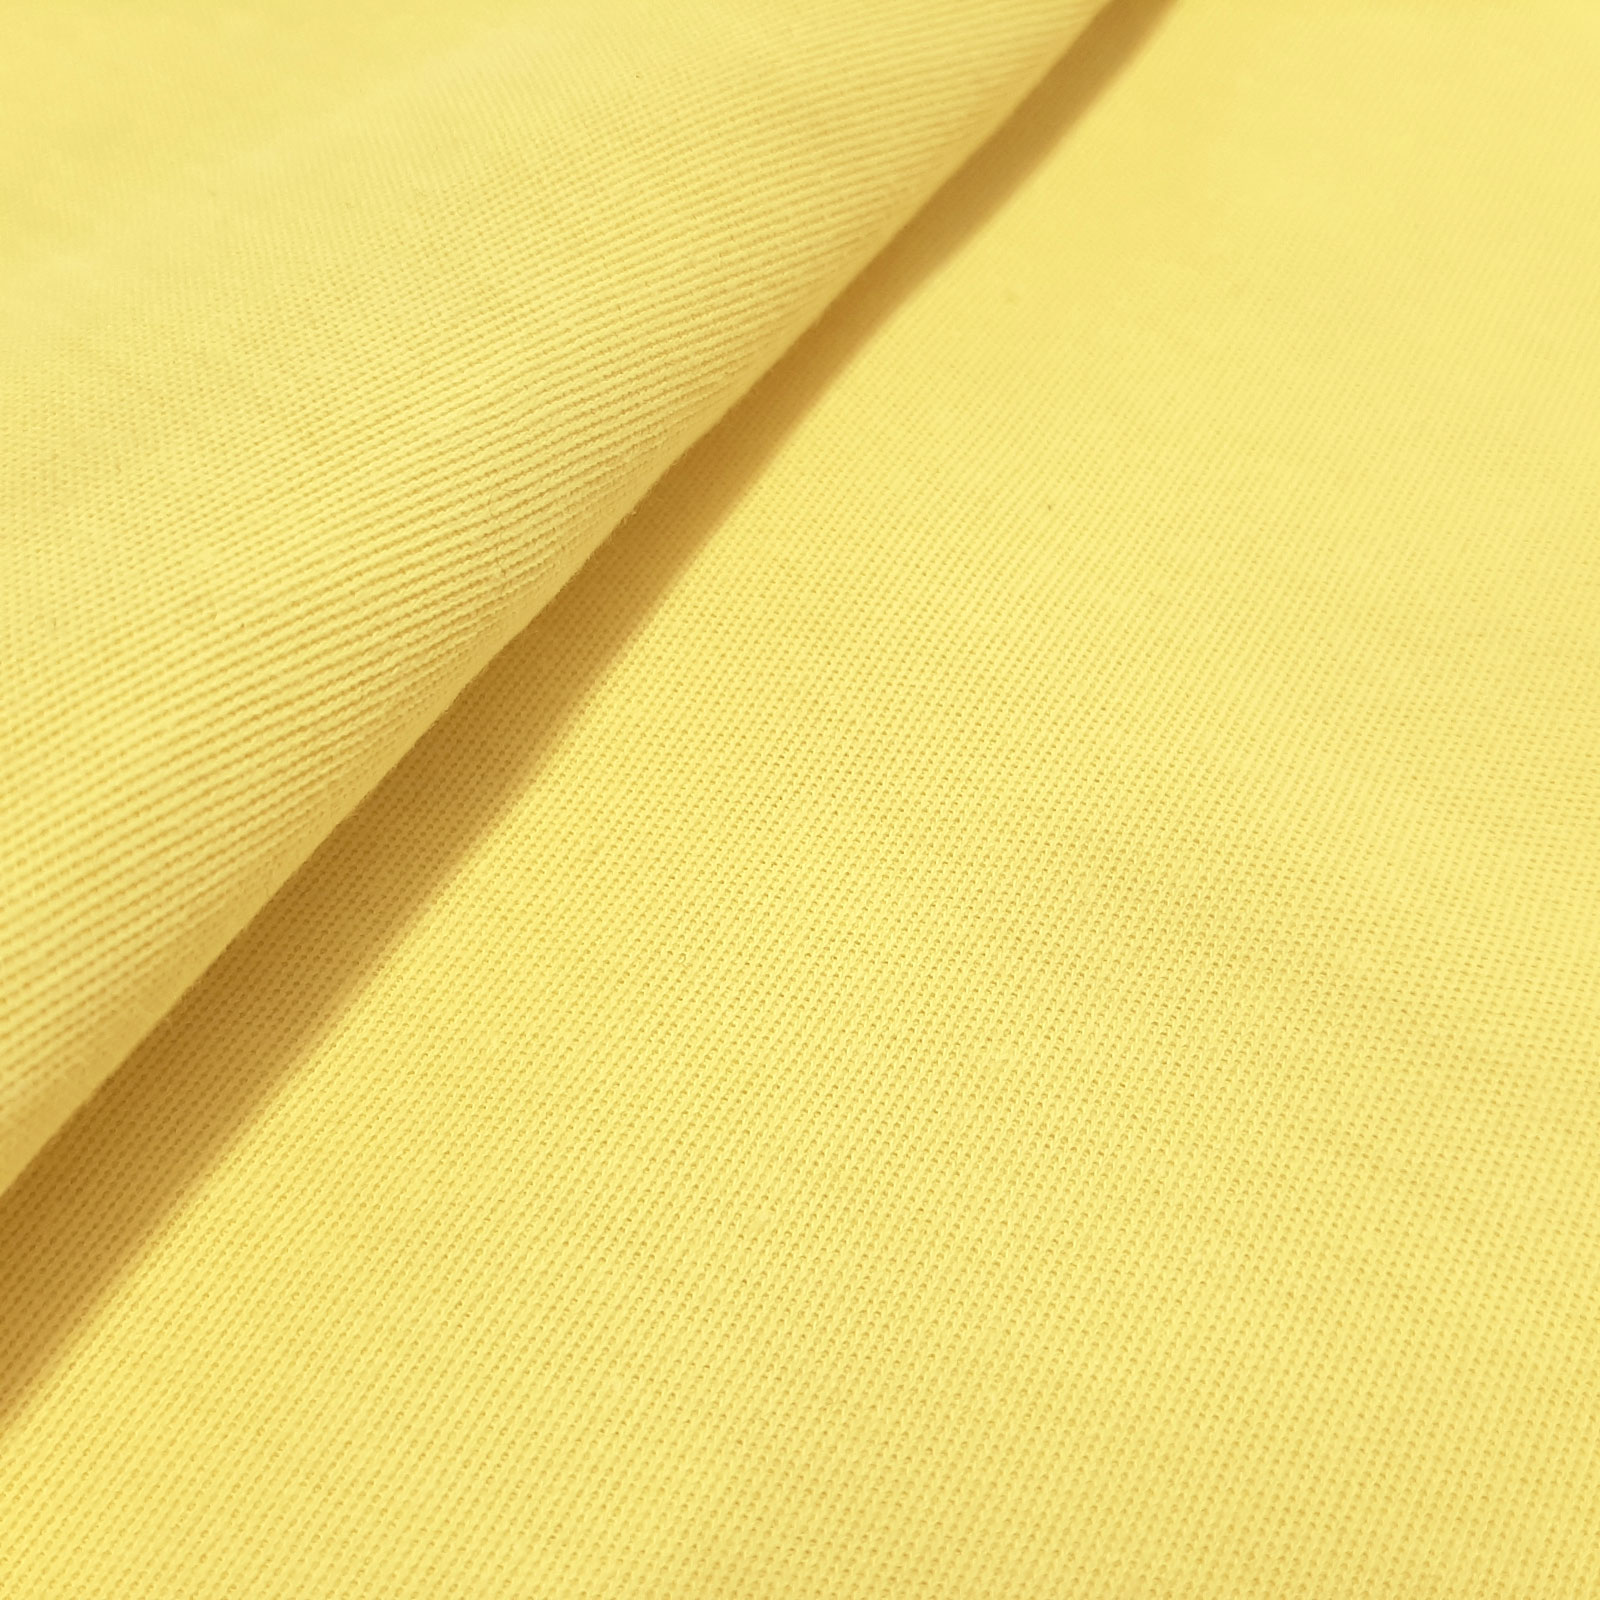 Herculette - Aramid Kevlar® tecido de malha com interbloqueio de protecção contra cortes - elástico